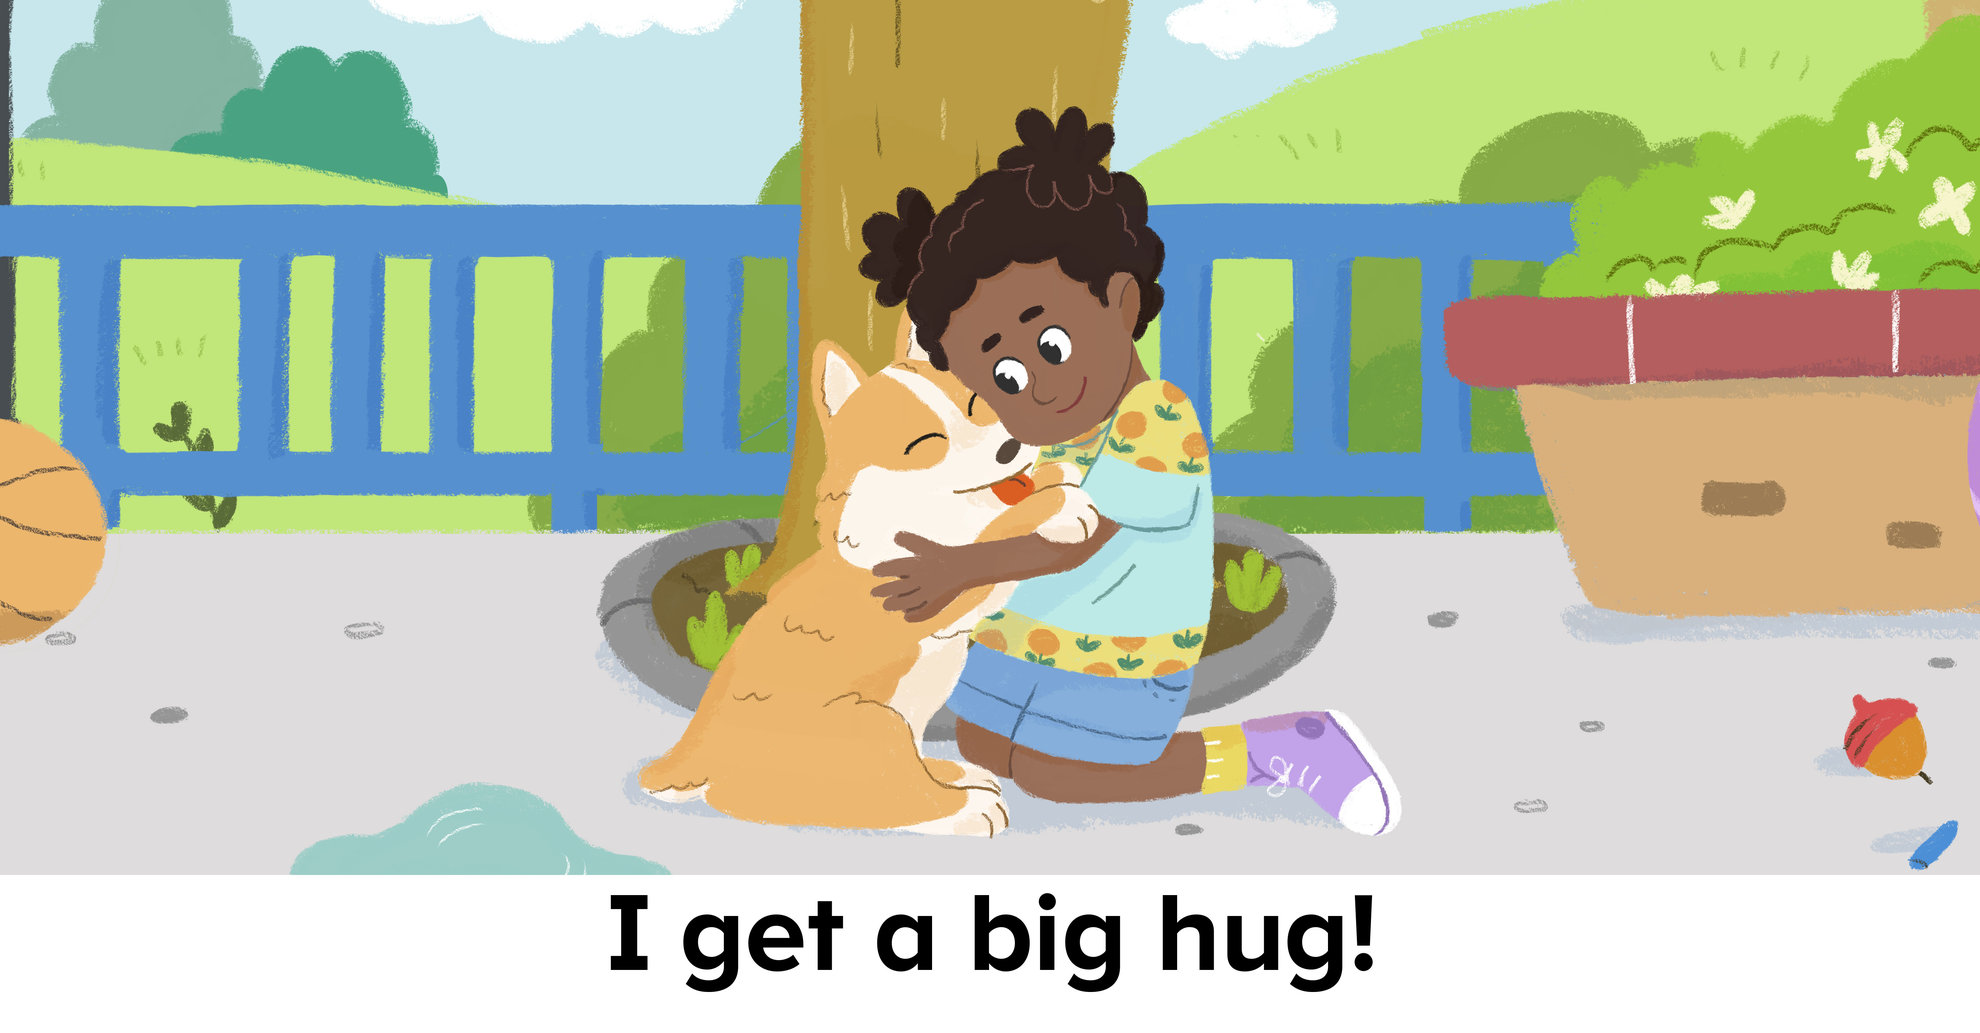 A Big Hug